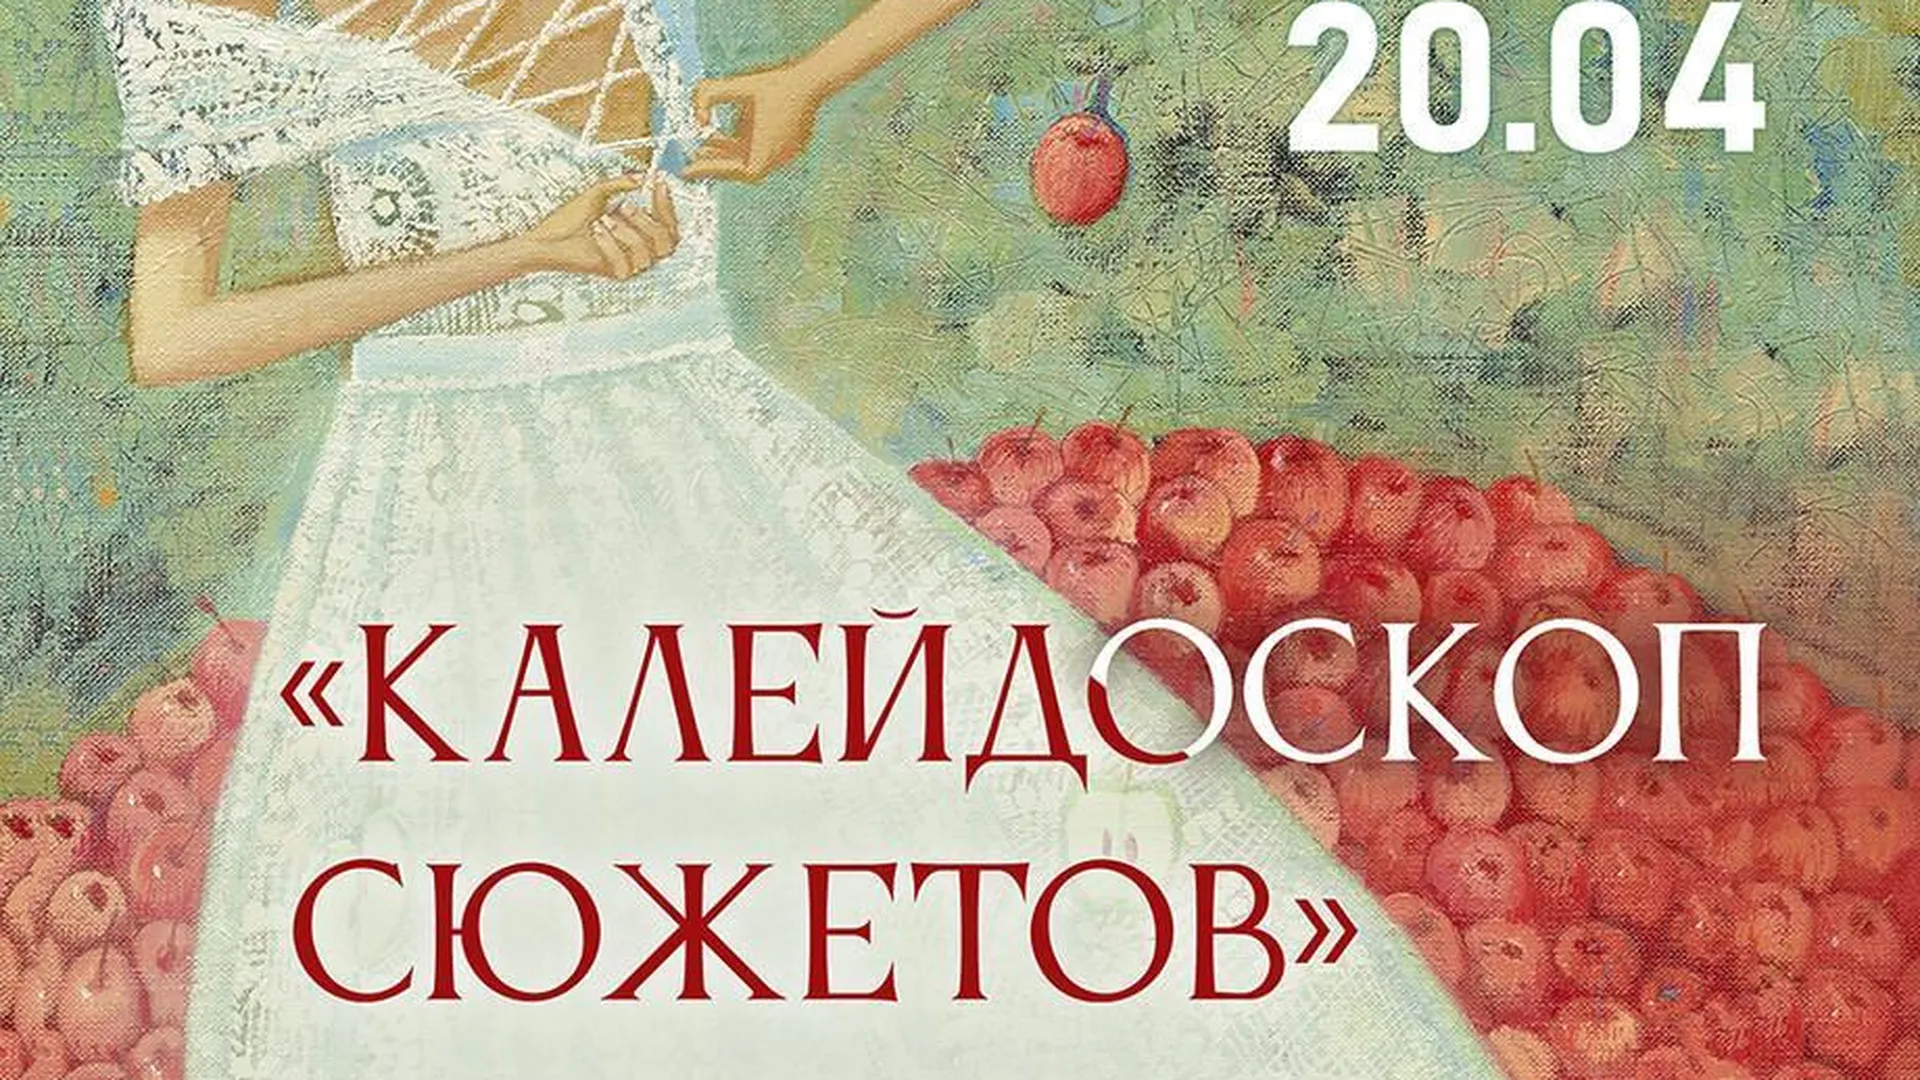 В Щелкове 13 марта откроется выставка «Калейдоскоп сюжетов»